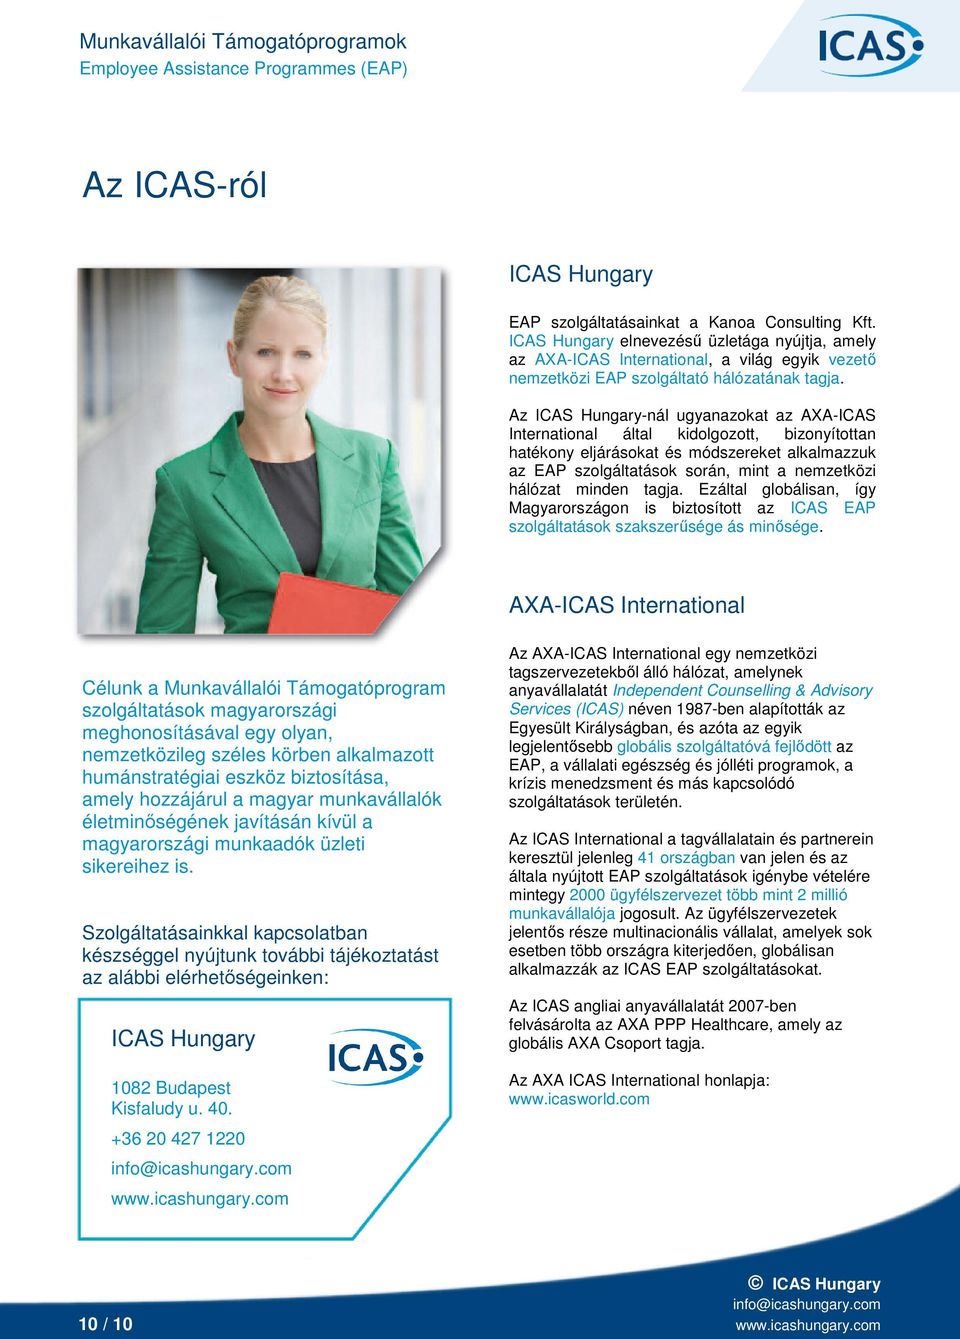 Az ICAS Hungary-nál ugyanazokat az AXA-ICAS International által kidolgozott, bizonyítottan hatékony eljárásokat módszereket alkalmazzuk az EAP szolgáltatások során, mint a nemzetközi hálózat minden